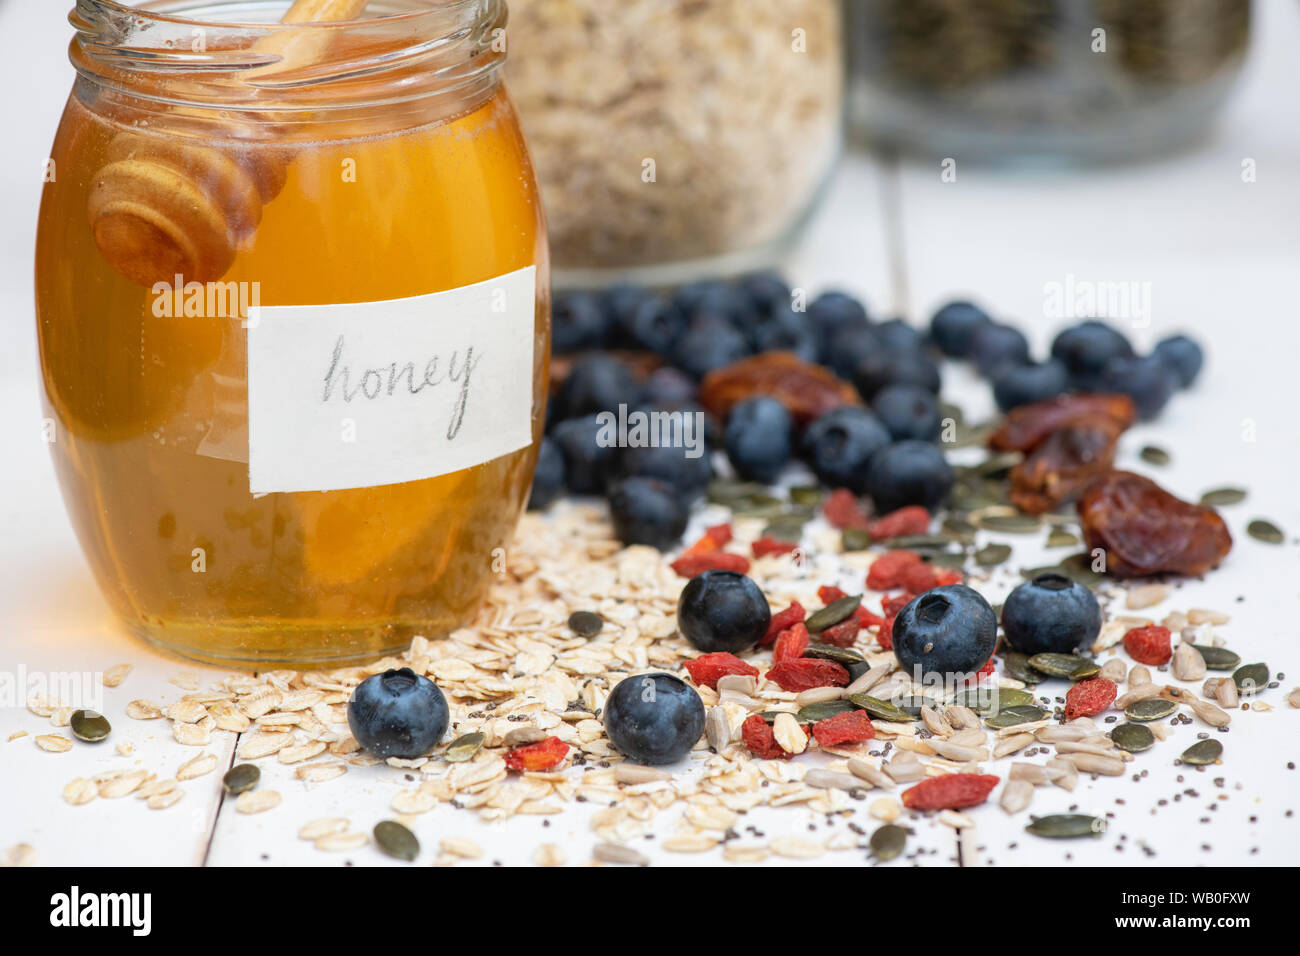 Krug Honig mit Beeren, Nüsse Samen und Hafer Stockfoto